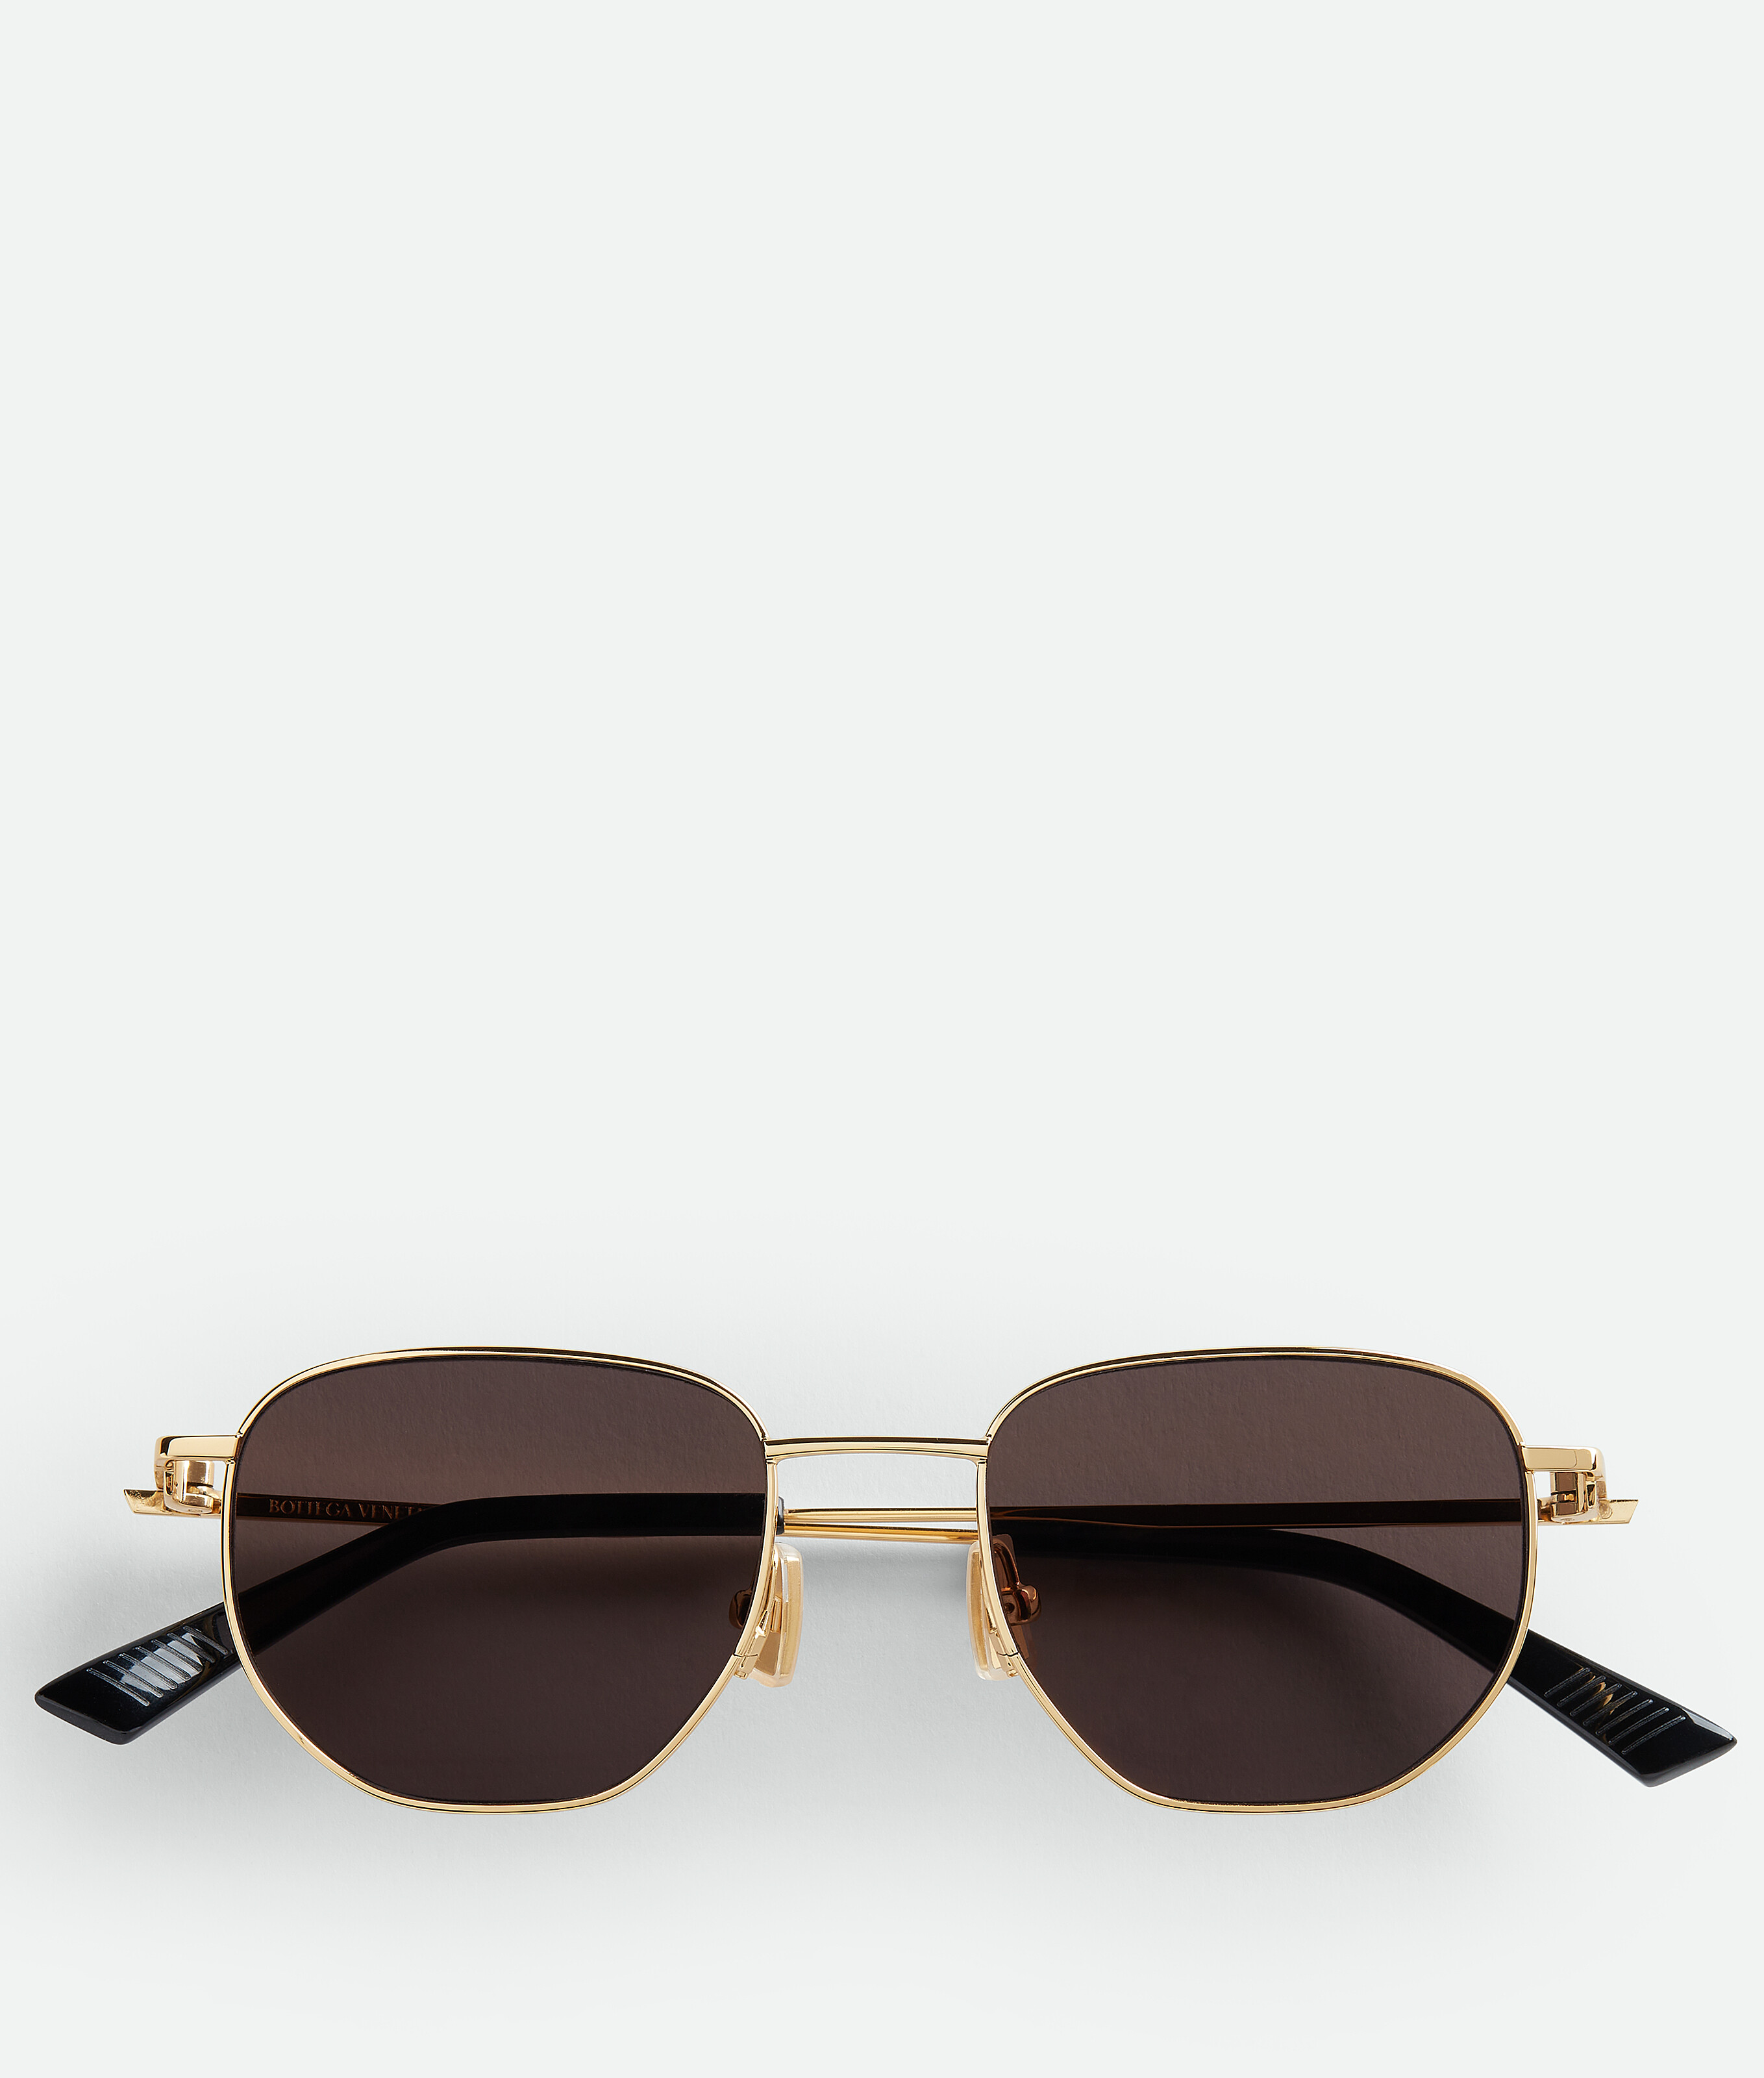 Bottega Veneta Split Trouserhos Sunglasses In Gold